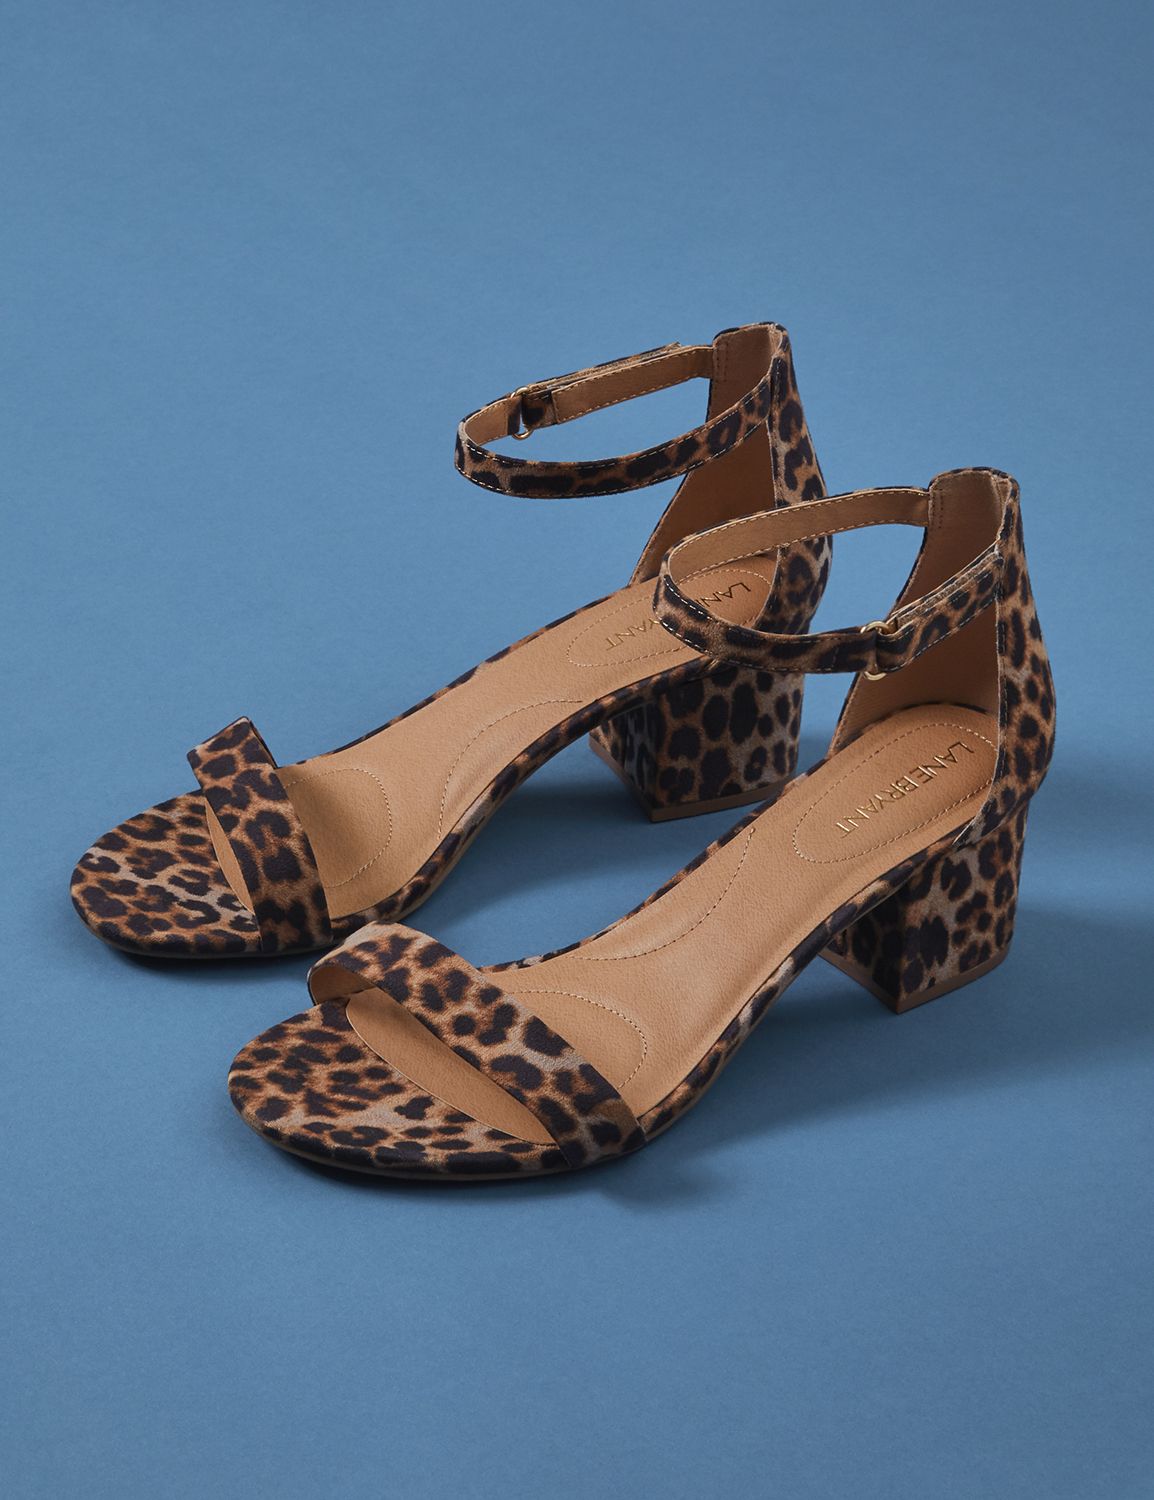 wide width leopard print booties